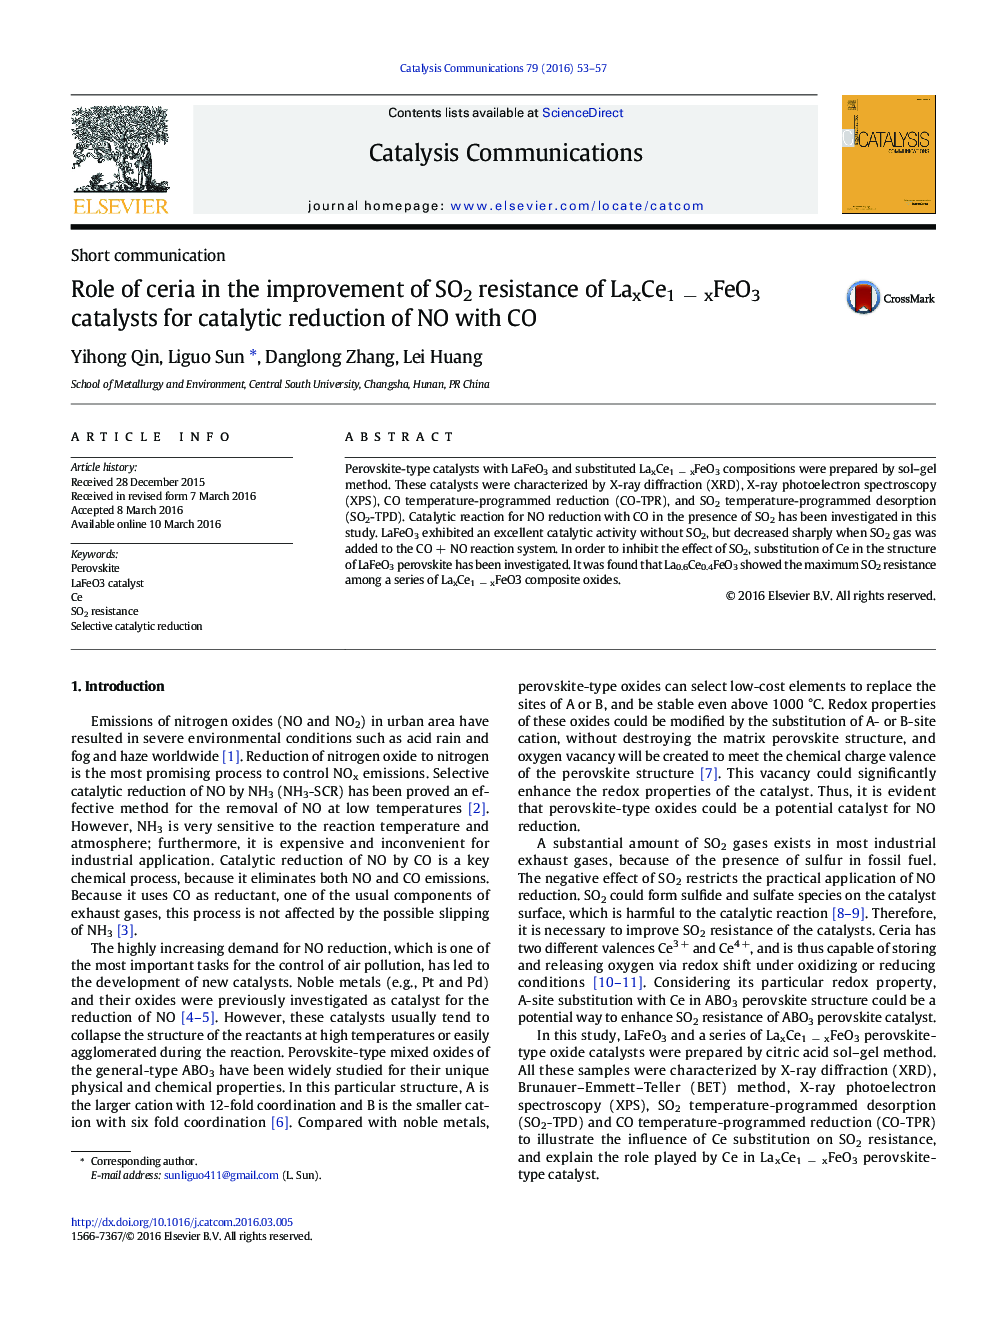 نقش ceria در بهبود مقاومت SO2 از کاتالیزورهای LaxCe1 - xFeO3 برای کاهش کاتالیزوری NO با CO